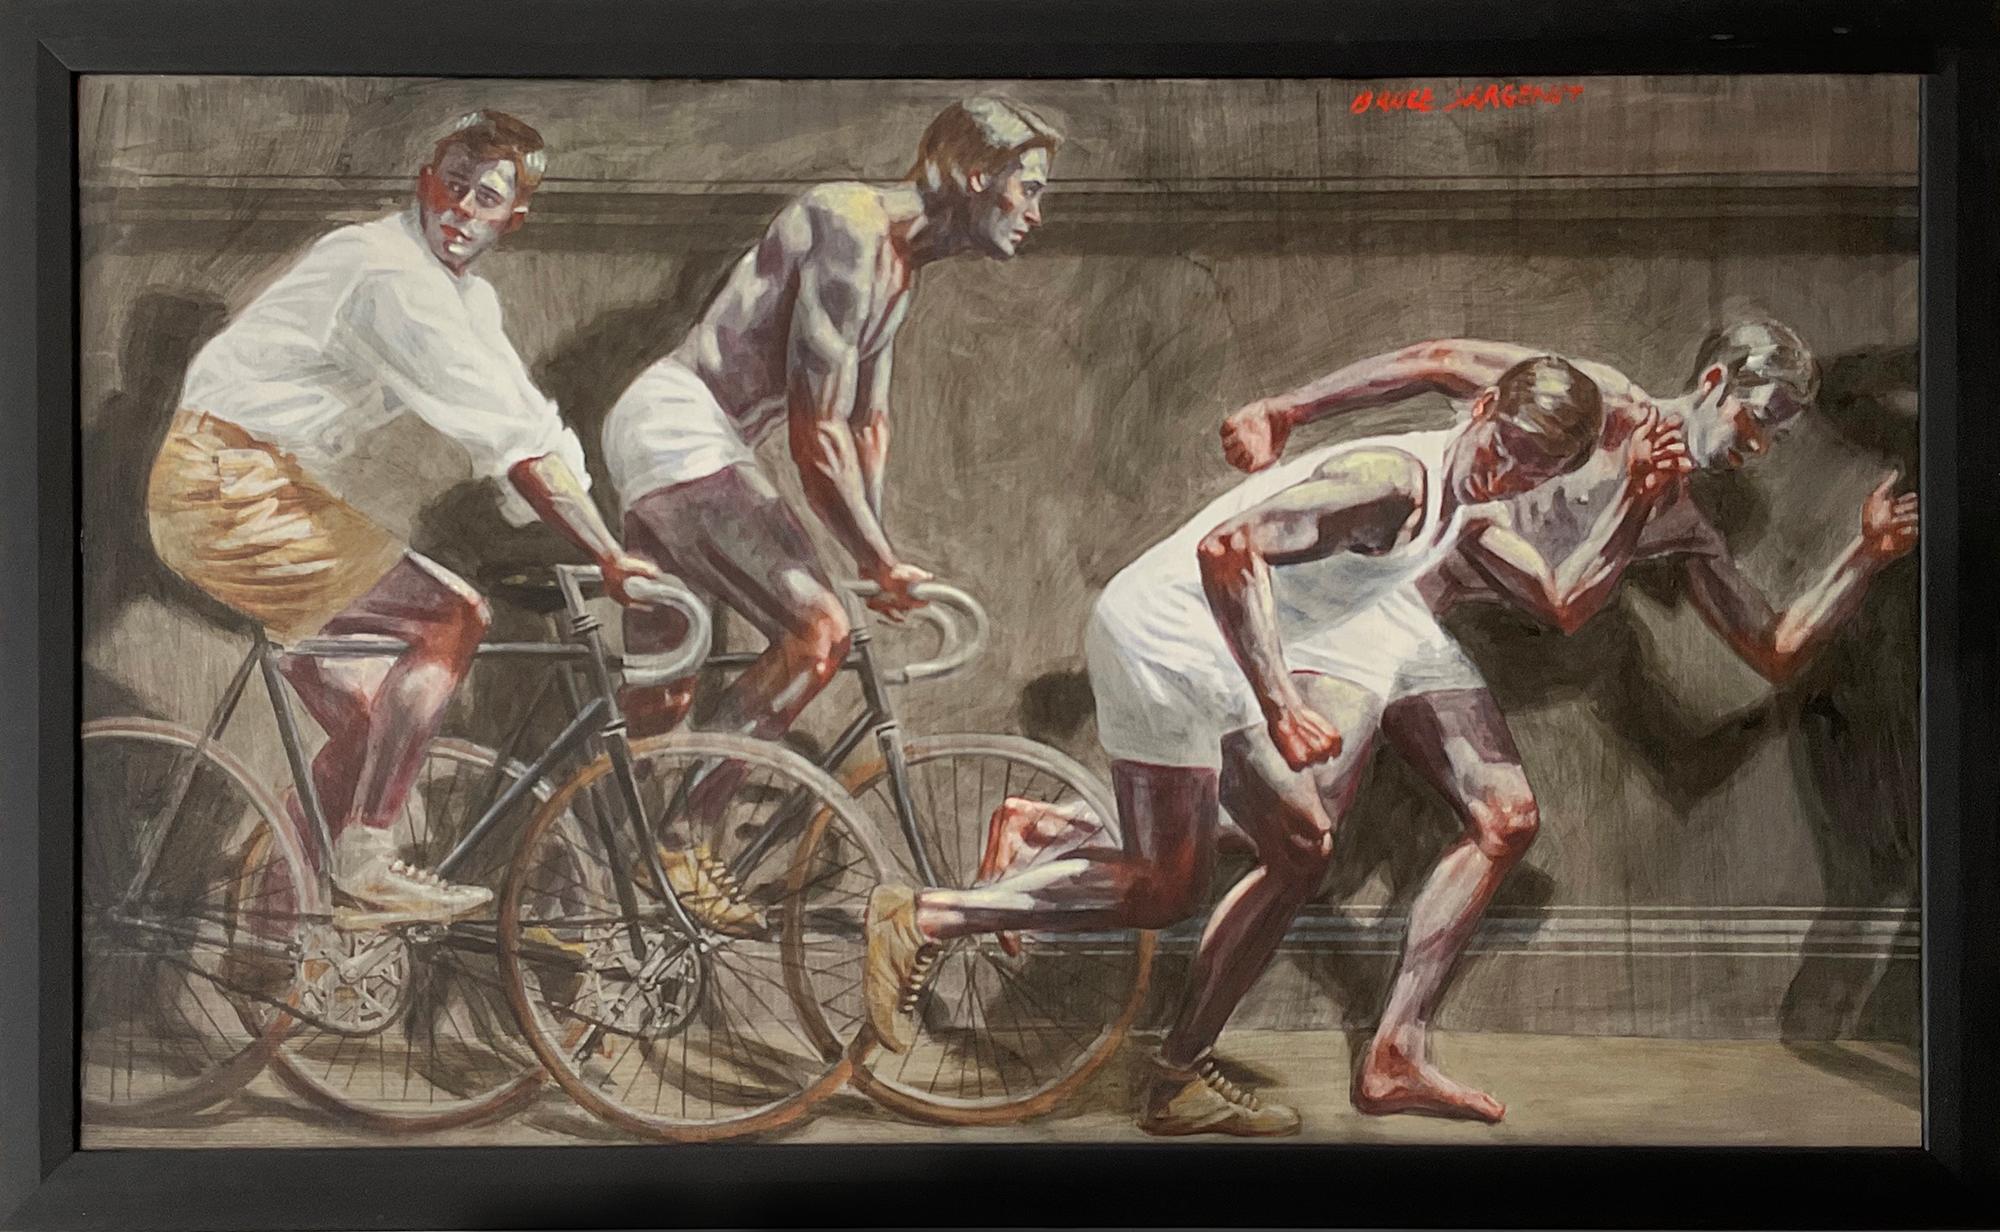 Akademisches figuratives Gemälde von vier jungen Sportlern beim Laufen und auf Fahrrädern
"Fries mit zwei Männern auf Fahrrädern", gemalt von Mark Beard als Bruce Sargeant (Pseudonym in Anlehnung an den Modefotografen Bruce Weber und den figurativen